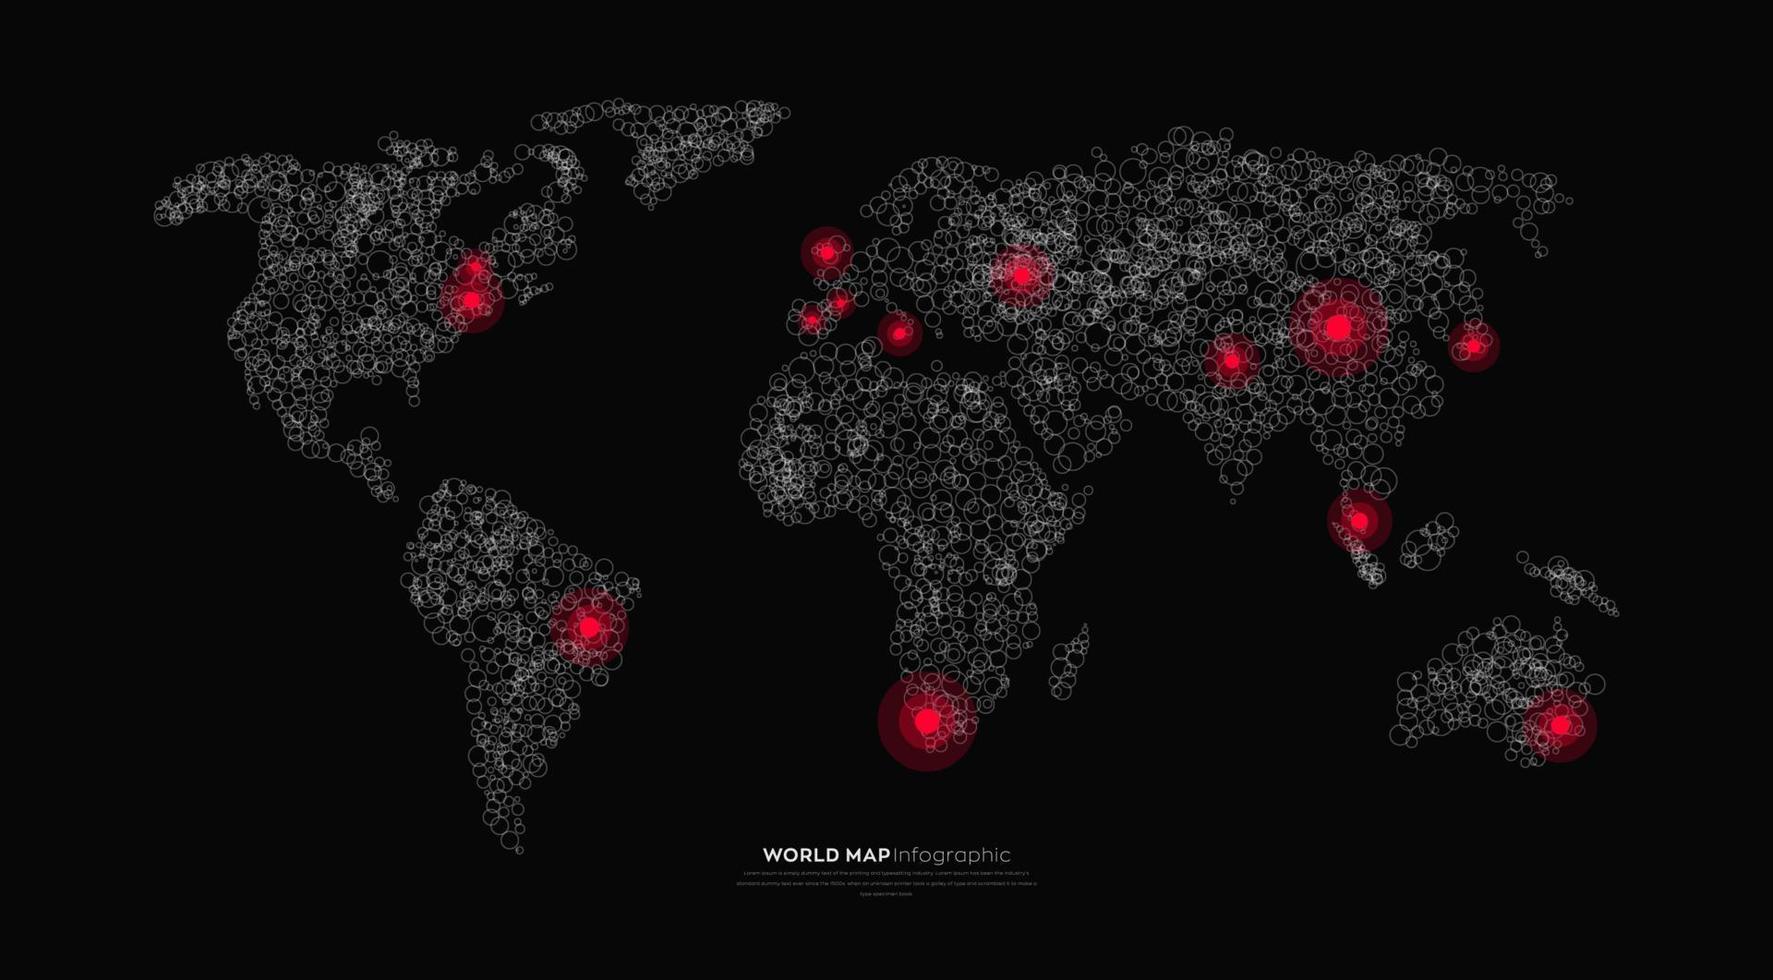 infografica mappa del mondo. mappa del mondo con evidenziazione delle città principali.illustrazione vettoriale mappa silhouette isolata su sfondo scuro.